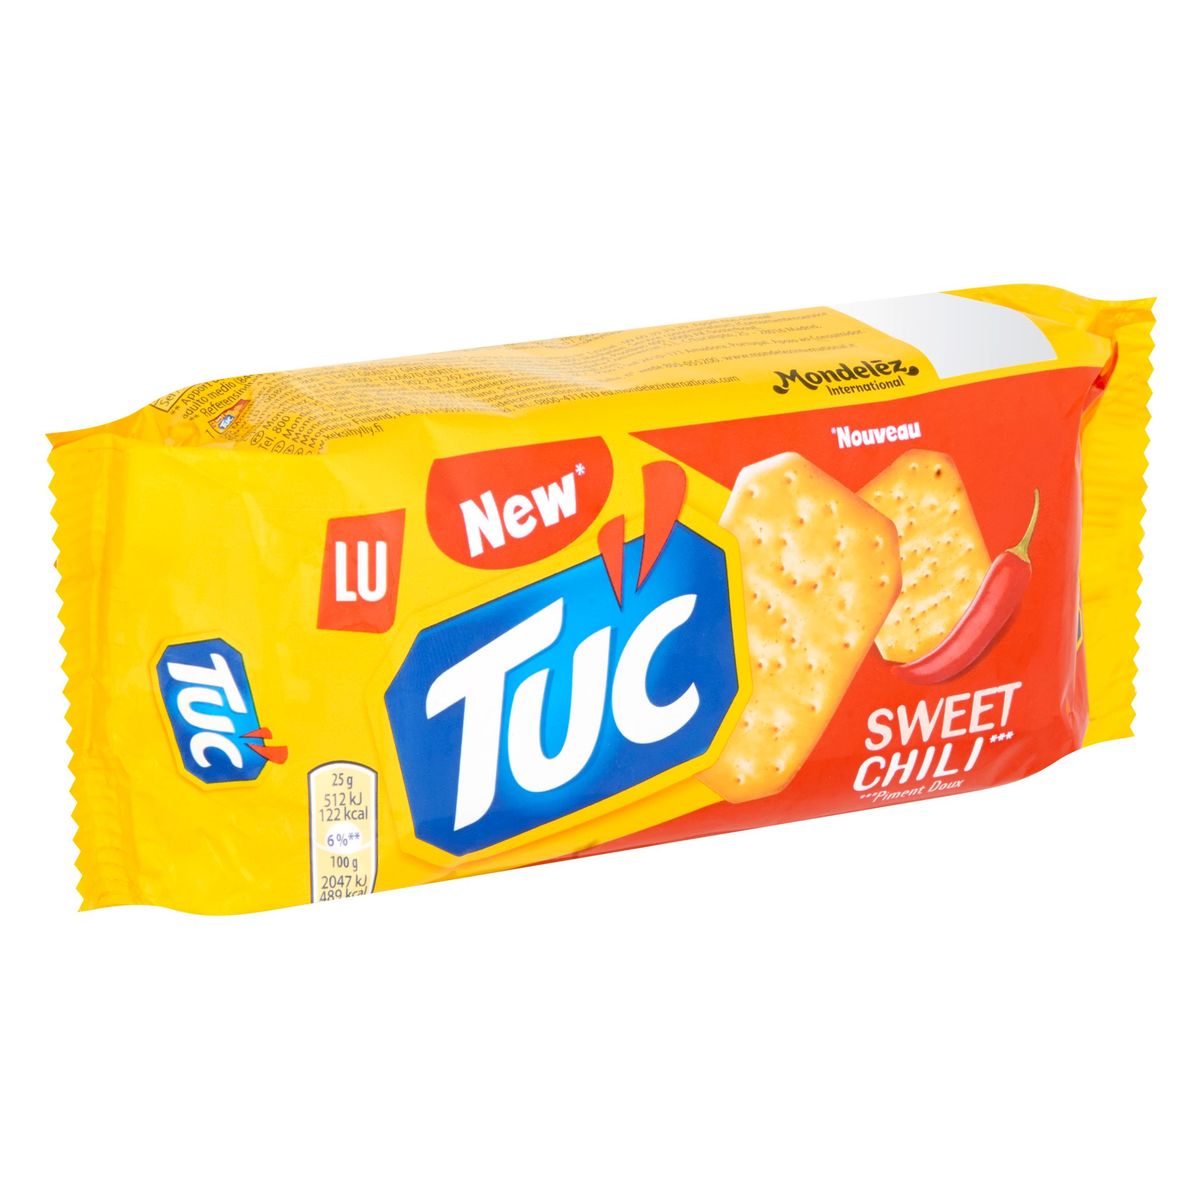 LU TUC Crackers Goût Sweet Chili 100 g